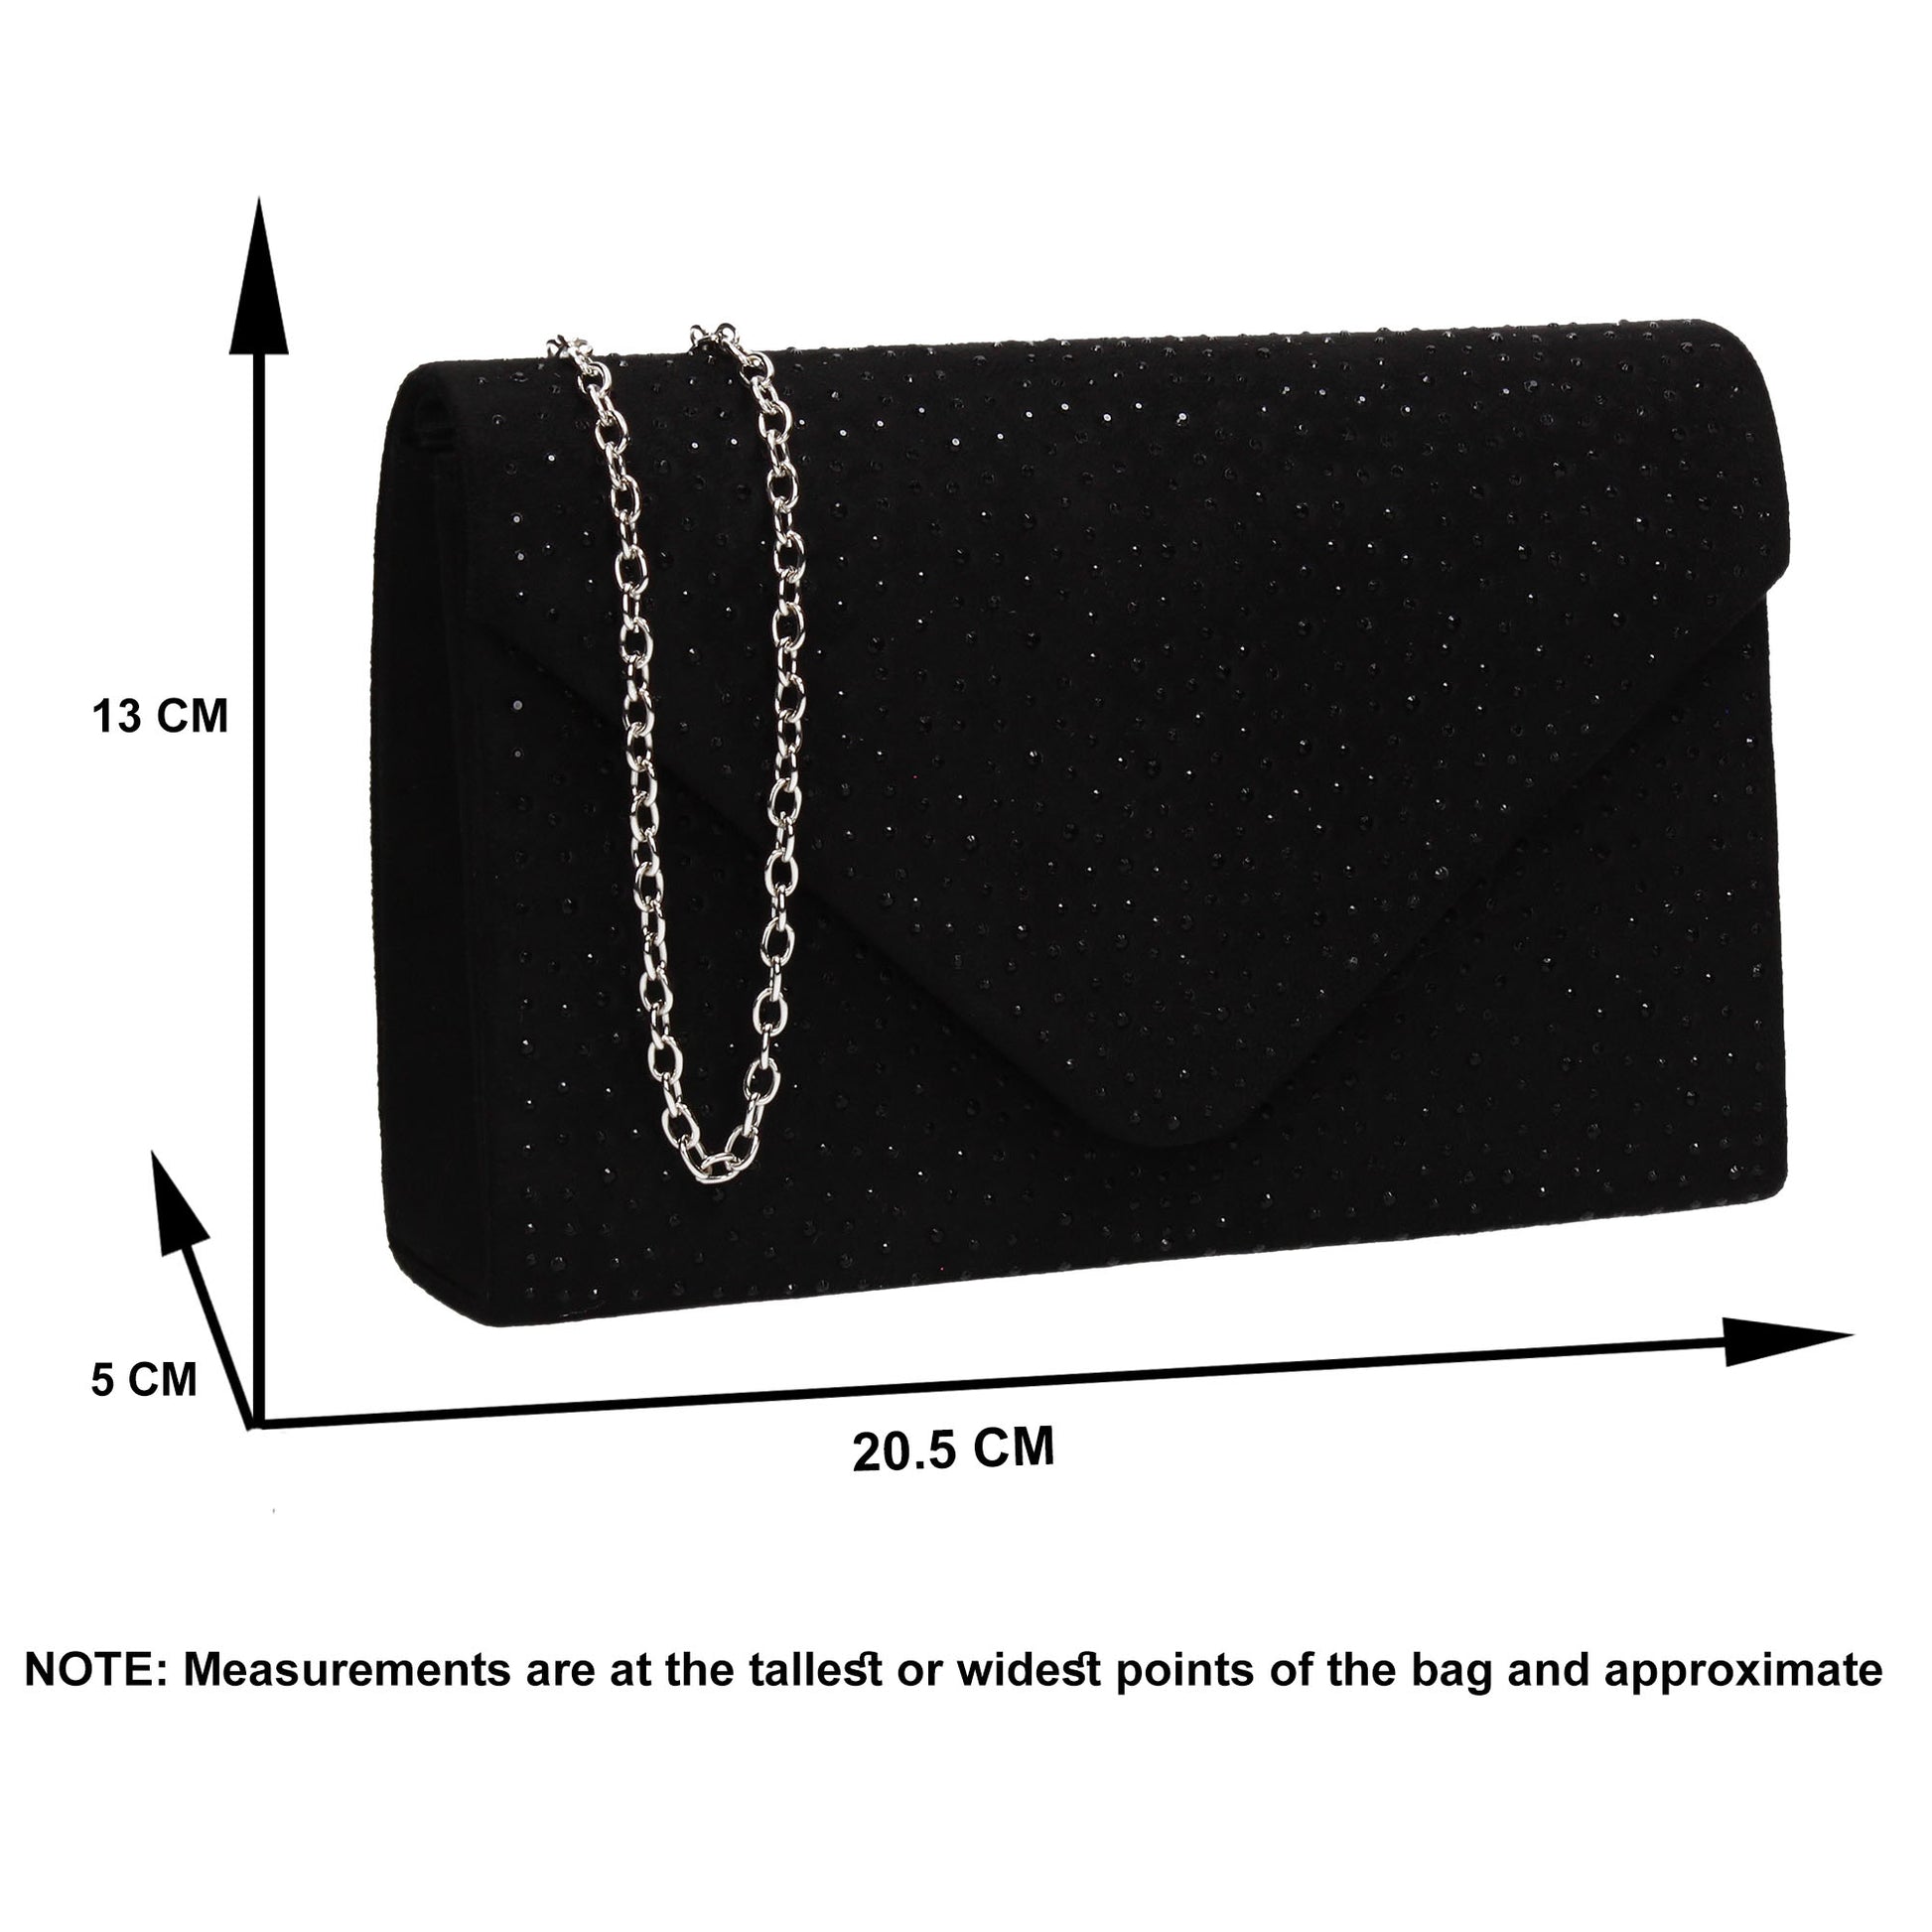 SWANKYSWANS Sidney Diamante Clutch Bag Black Cute Cheap Clutch Bag For Weddings School and Work